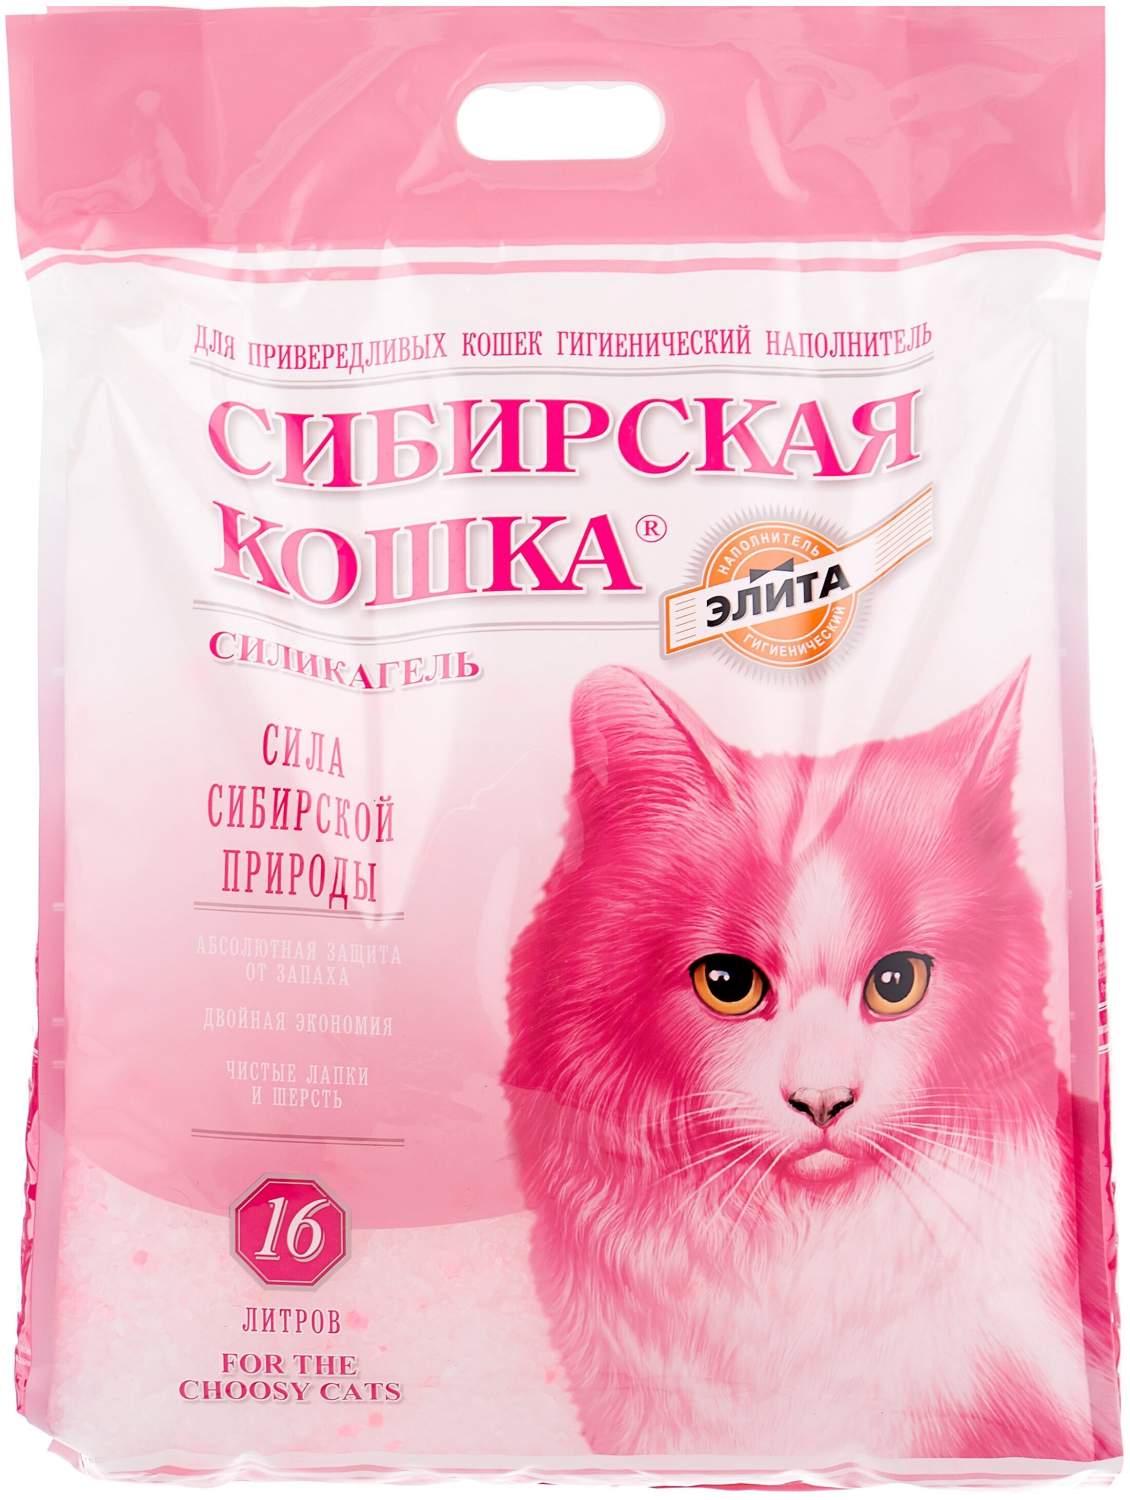 Купить впитывающий наполнитель Сибирская кошка Элита силикагелевый, 16 л,  цены на Мегамаркет | Артикул: 100023250456